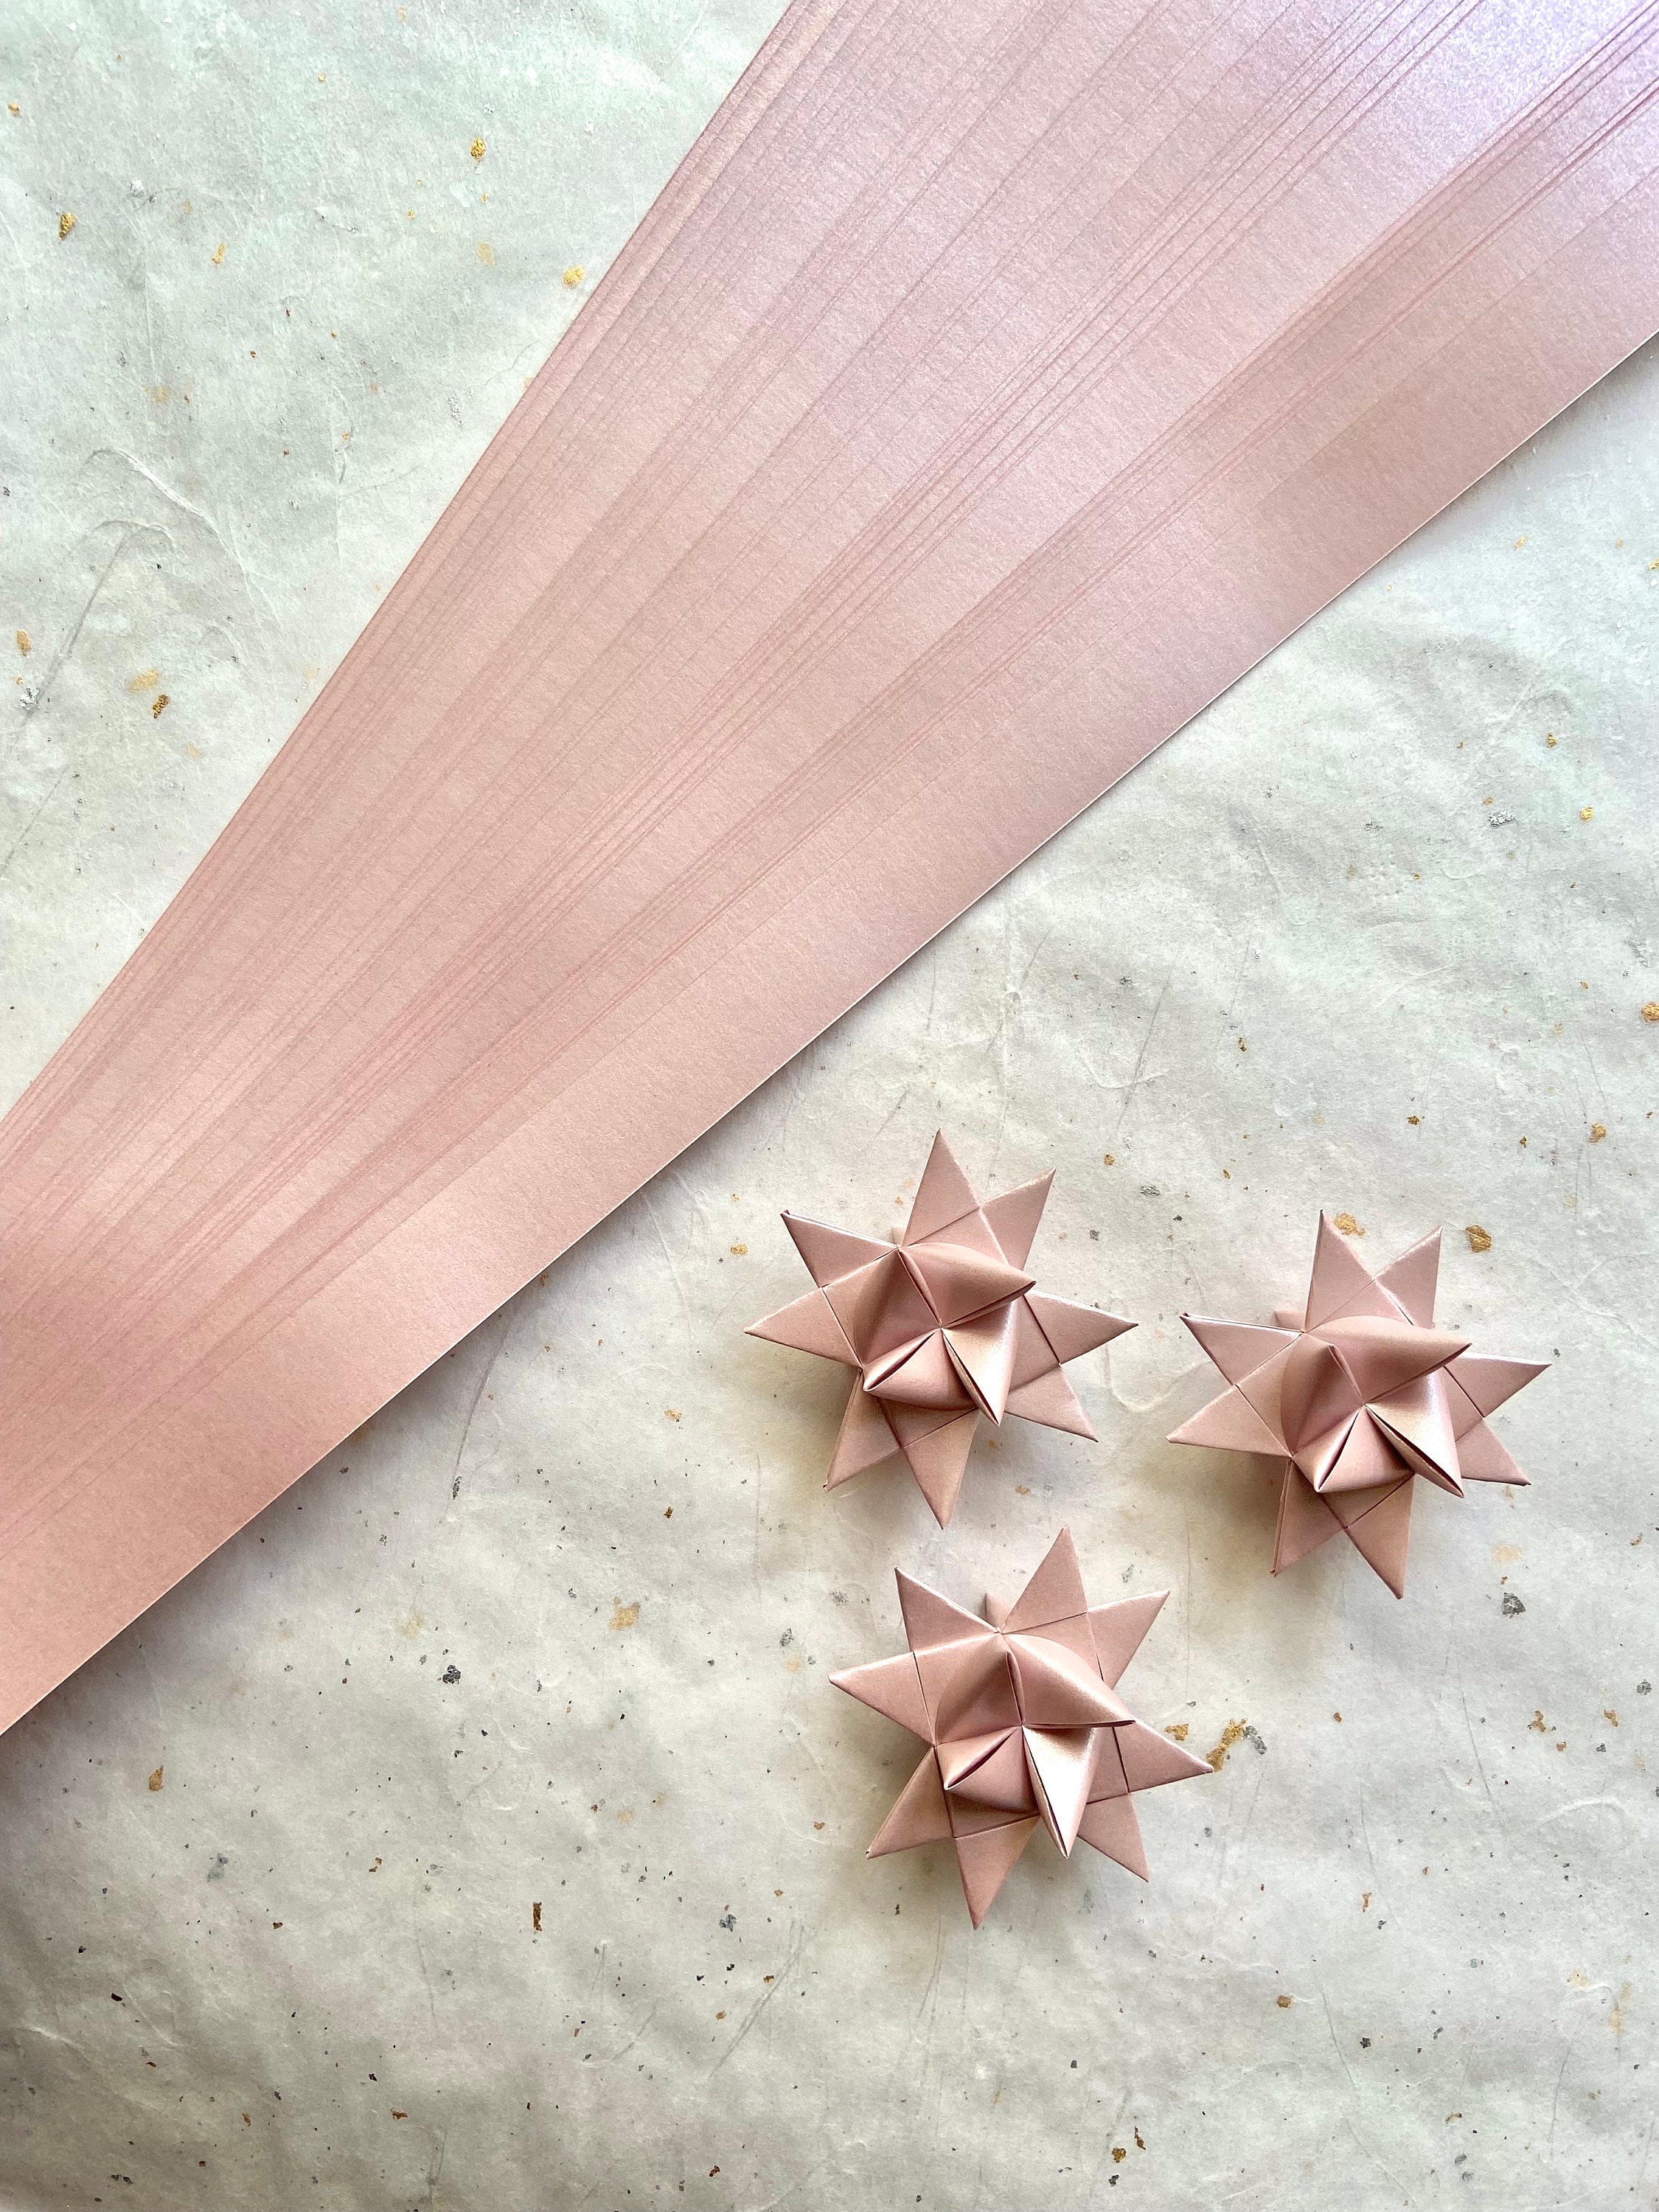 Origami froebel star, DIY paper star